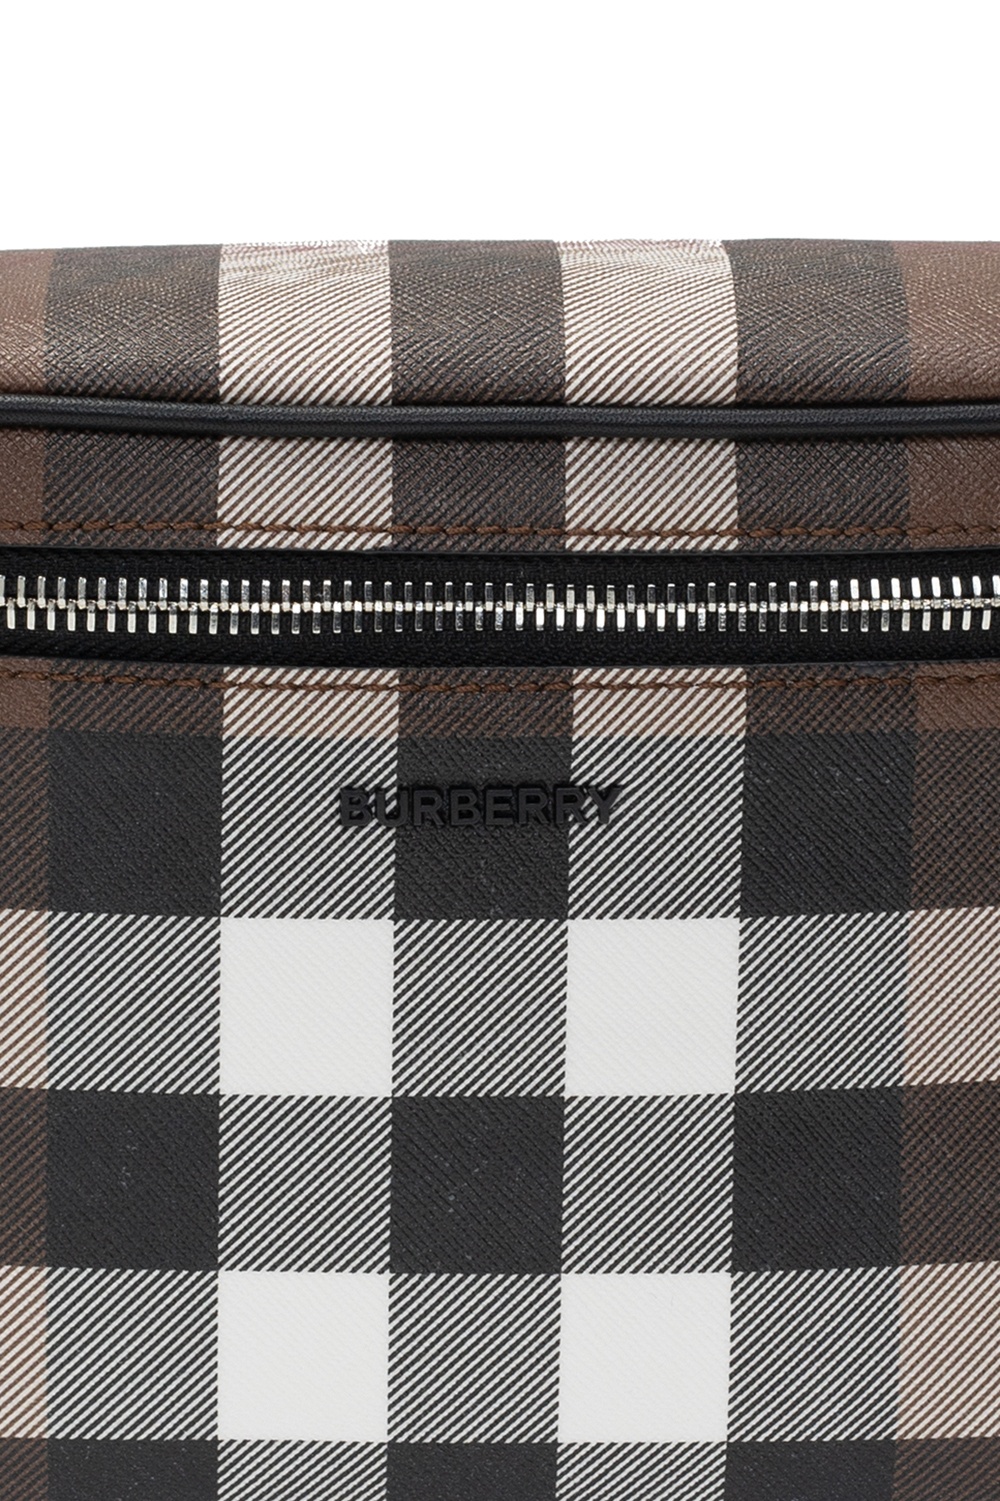 Burberry Branded belt bag